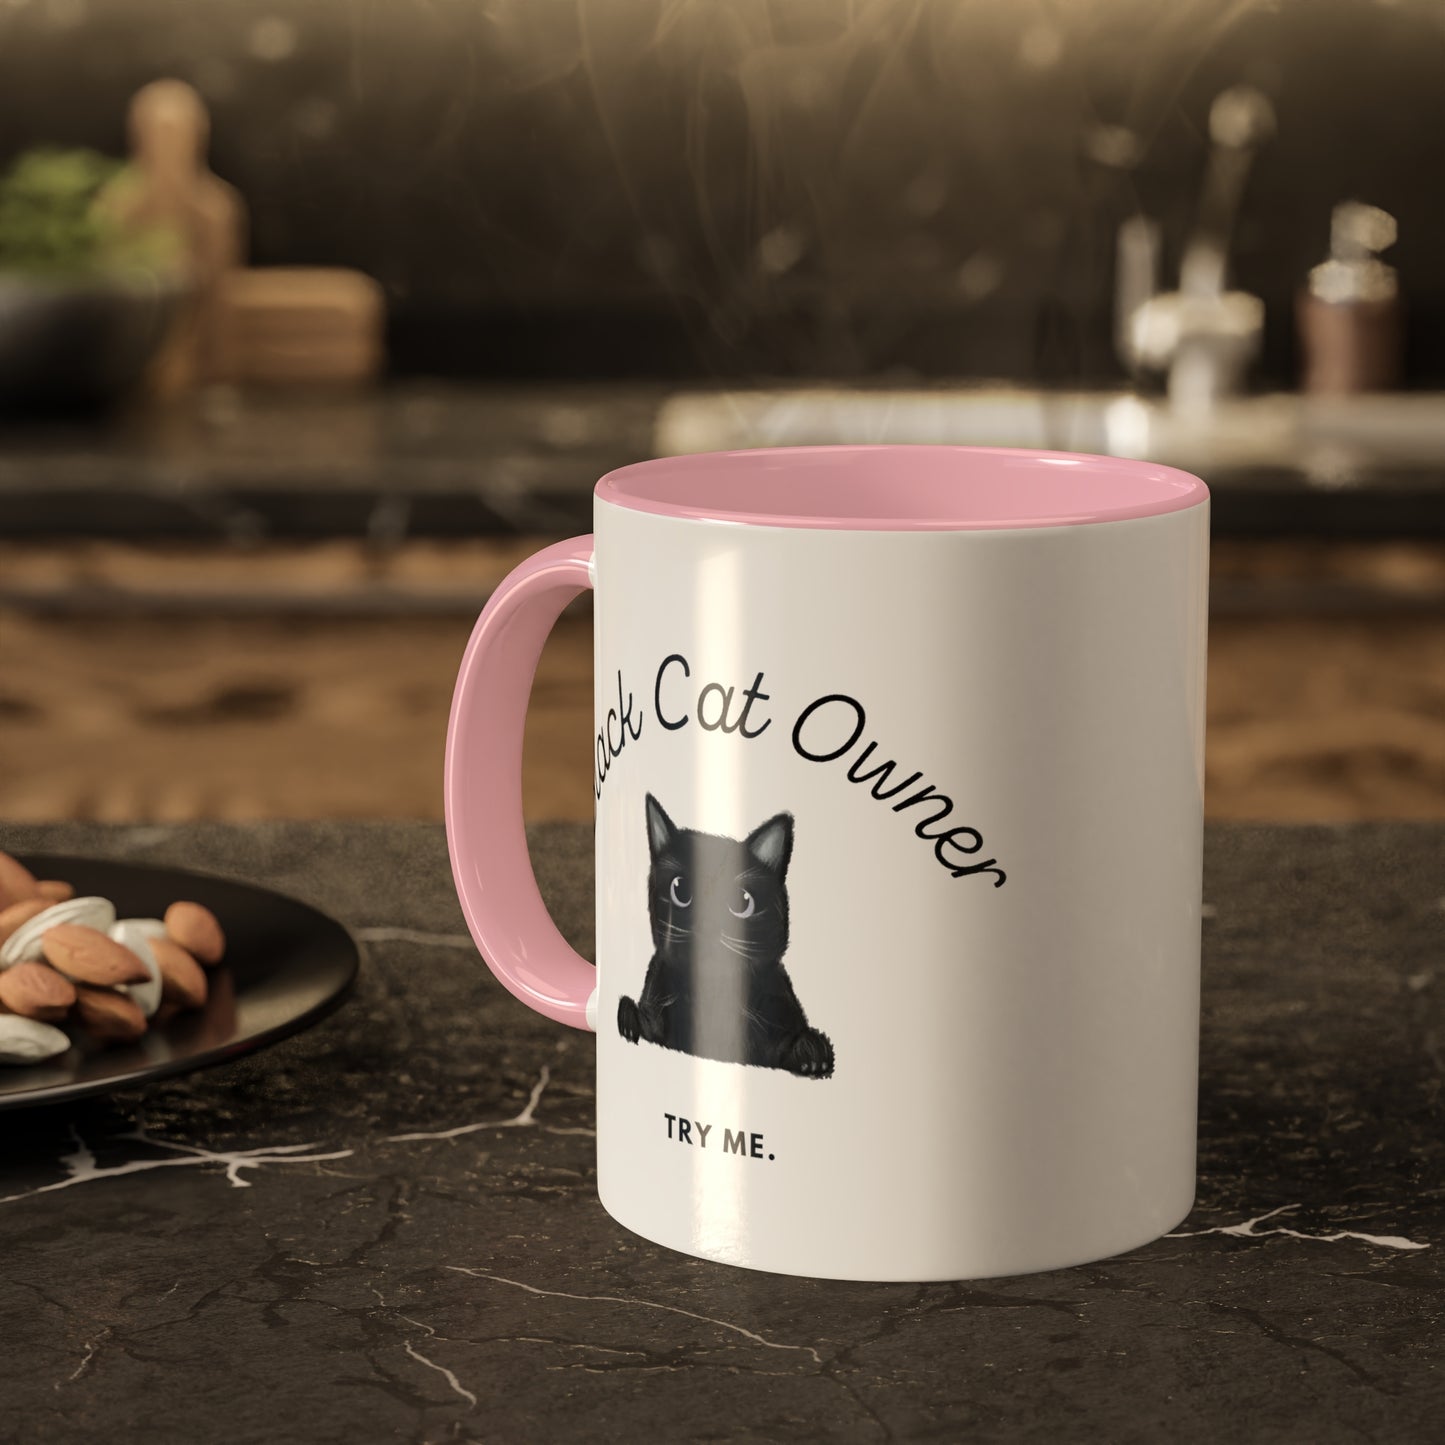 Black Cat Owner. TRY ME. Mug